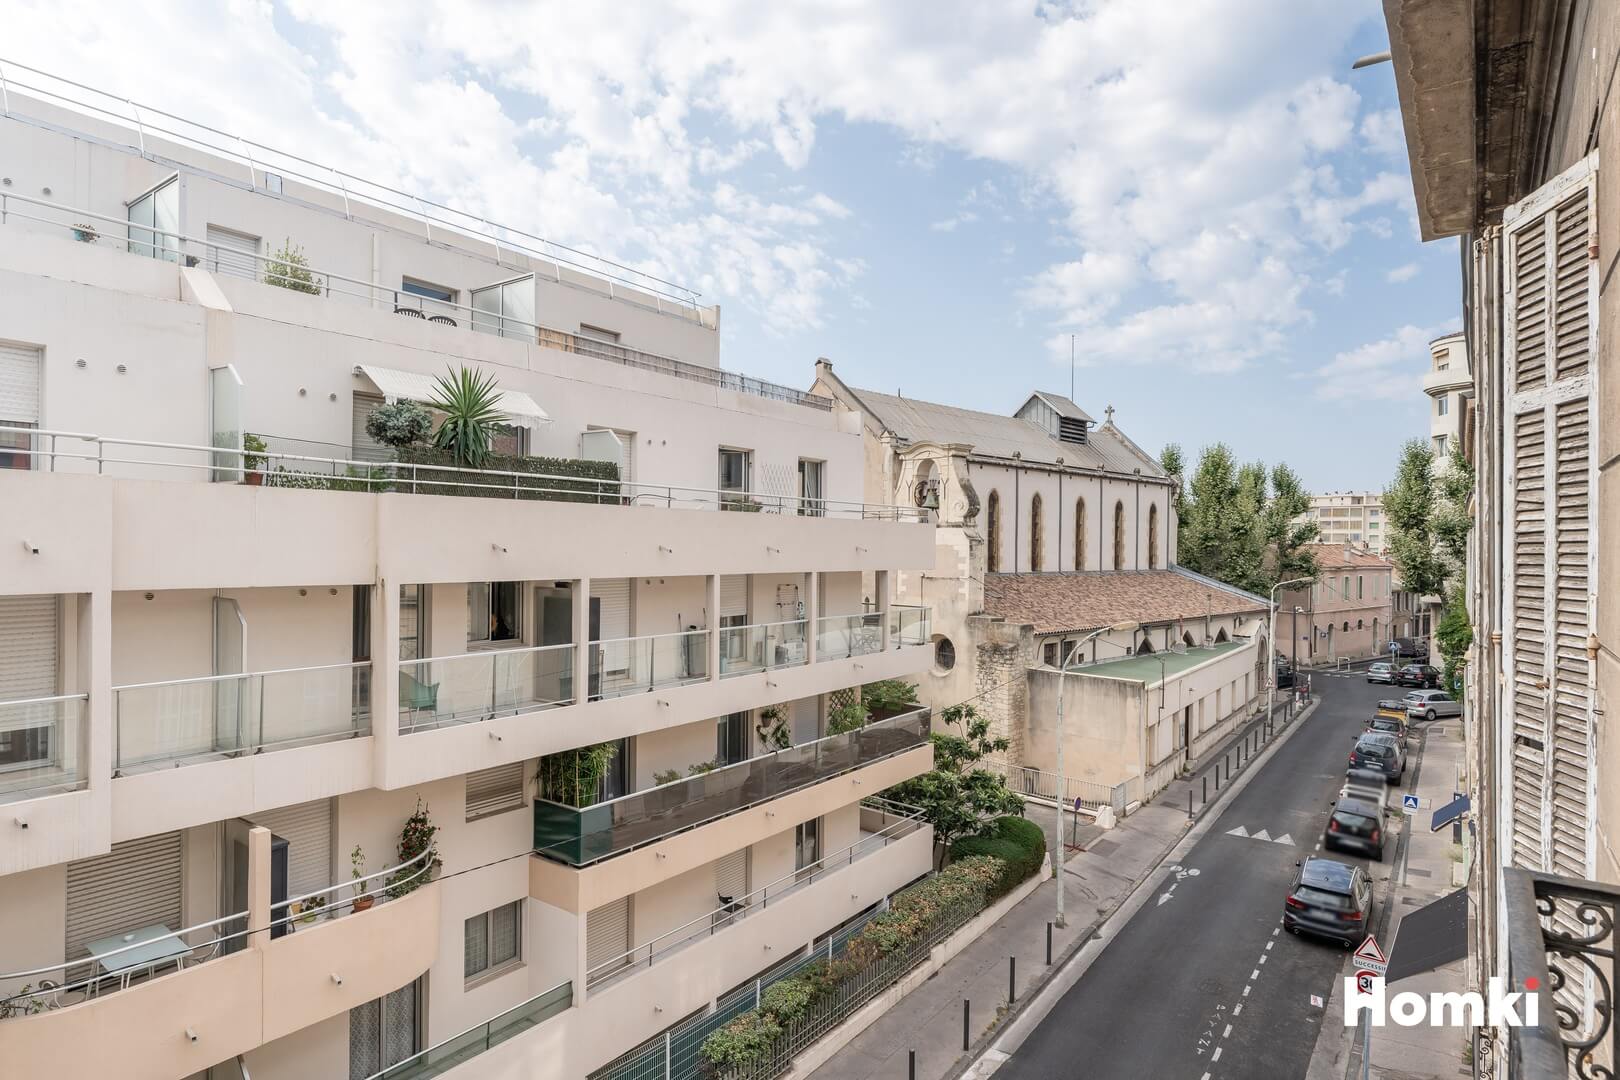 Homki - Vente Appartement  de 52.0 m² à Marseille 13008